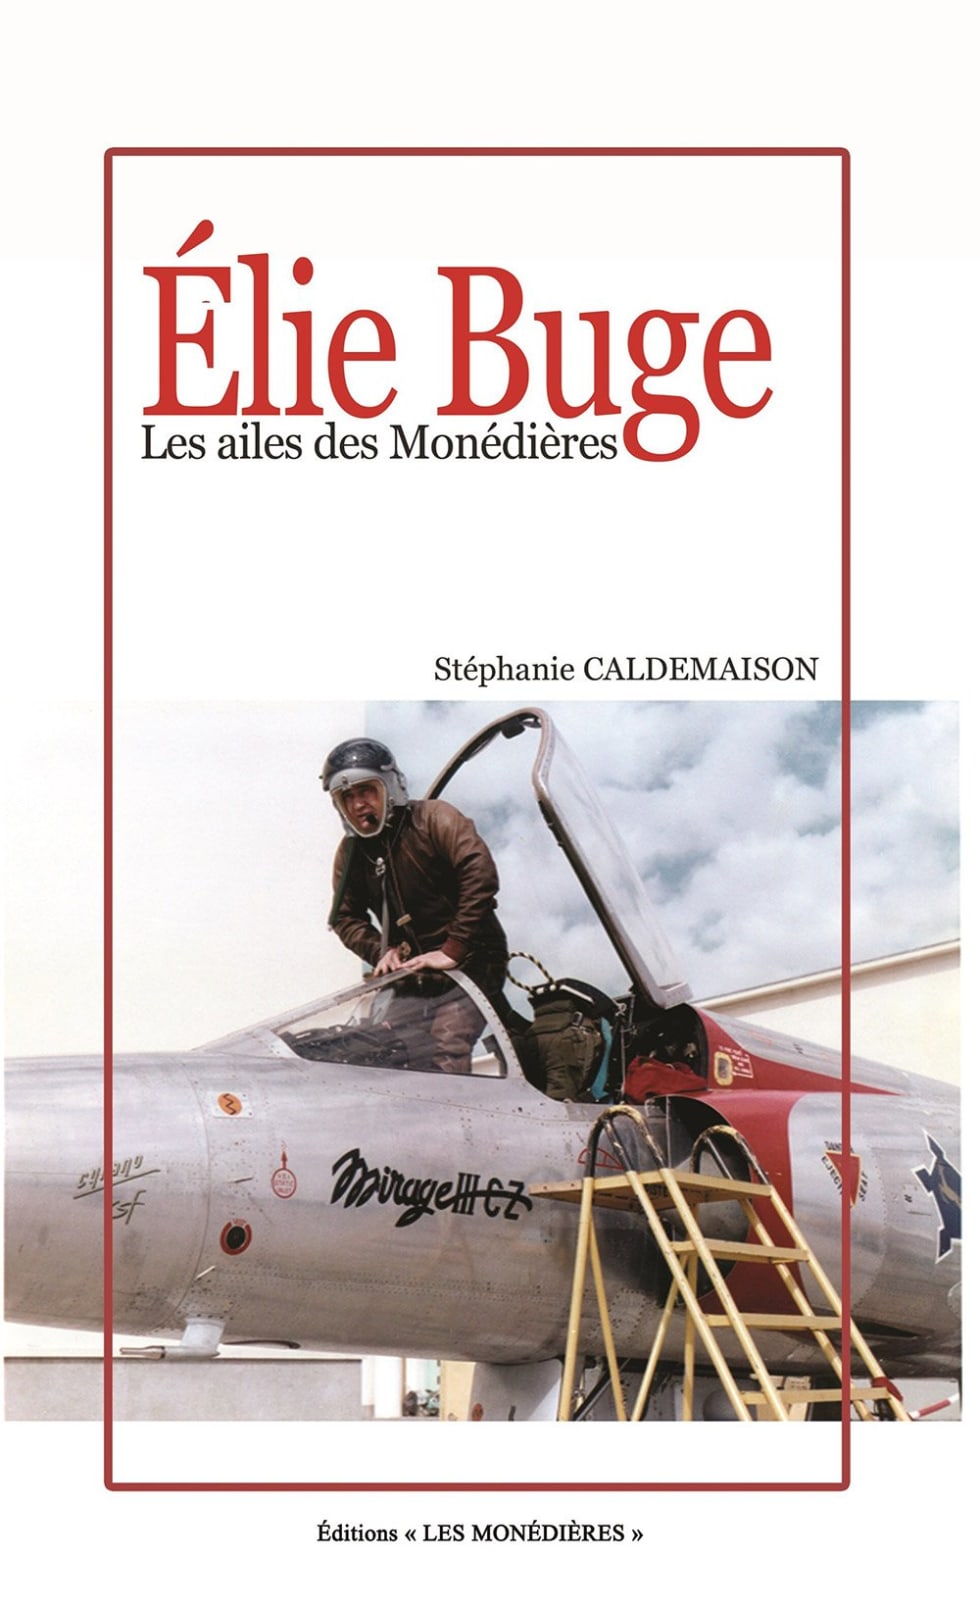 Elie Buge, Les ailes des Monédières